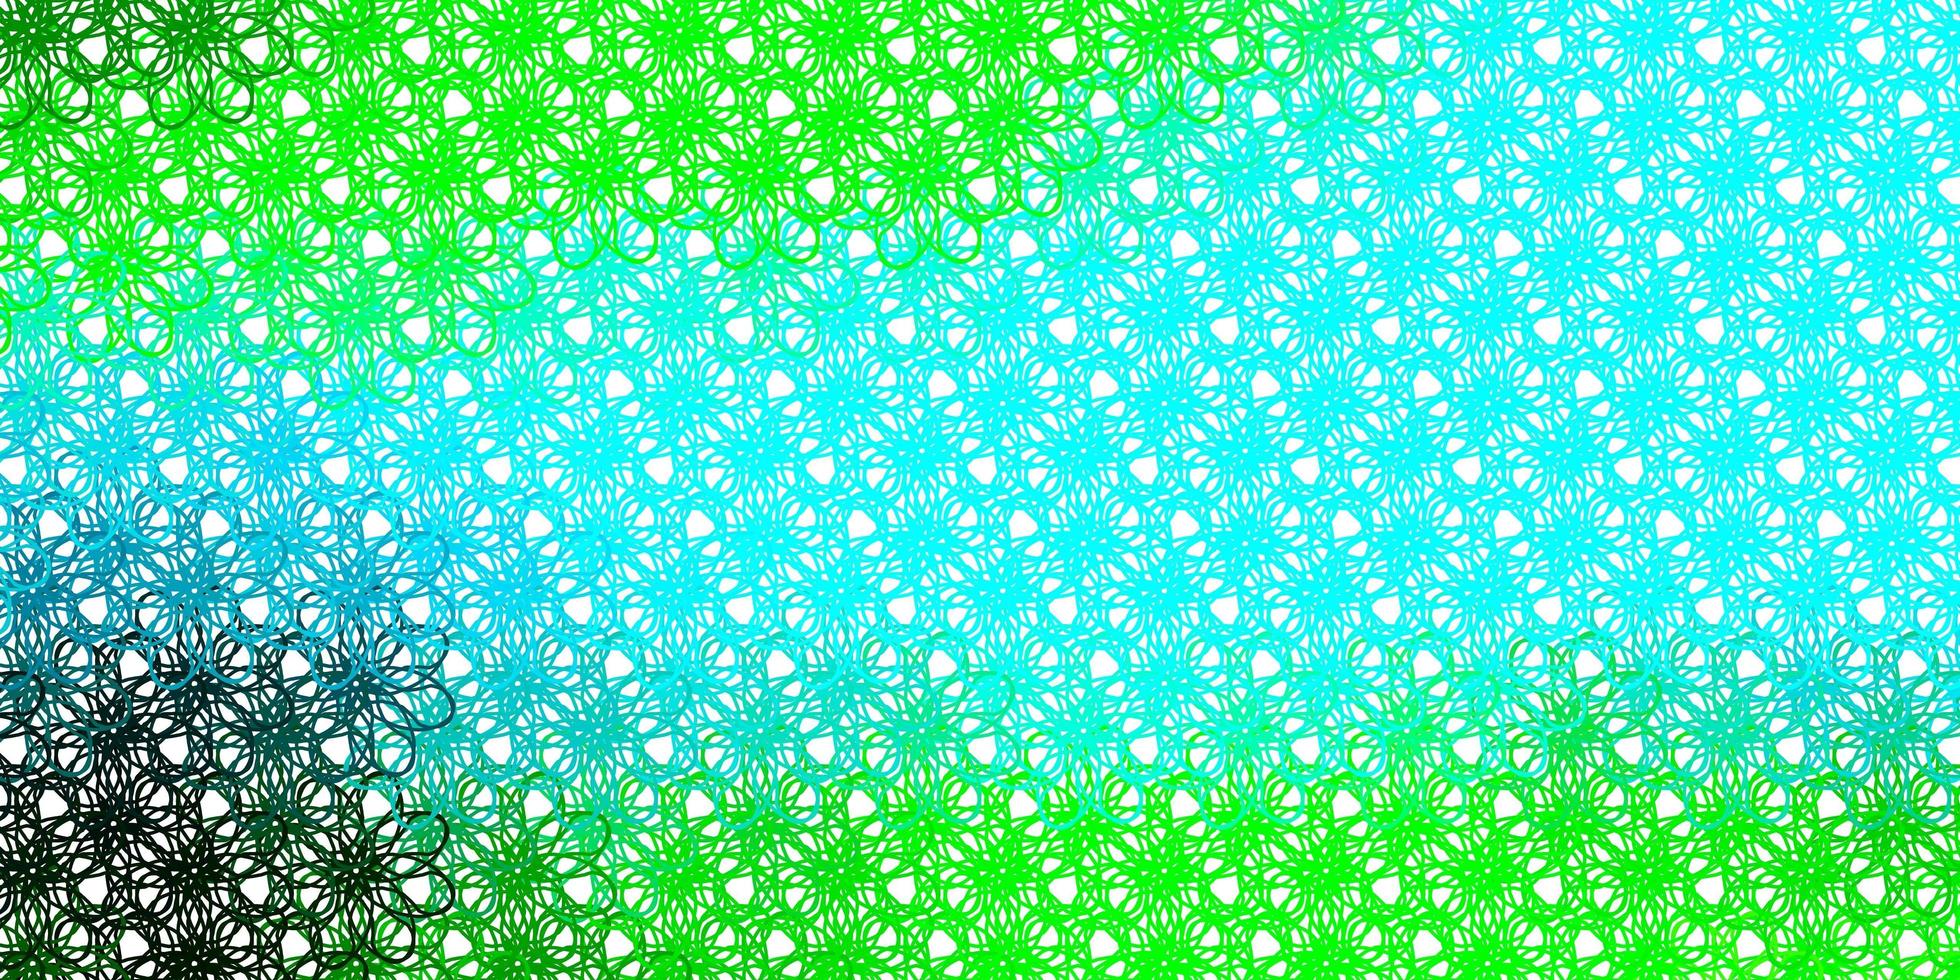 ljusblå, grön vektorbakgrund med kurvor. vektor